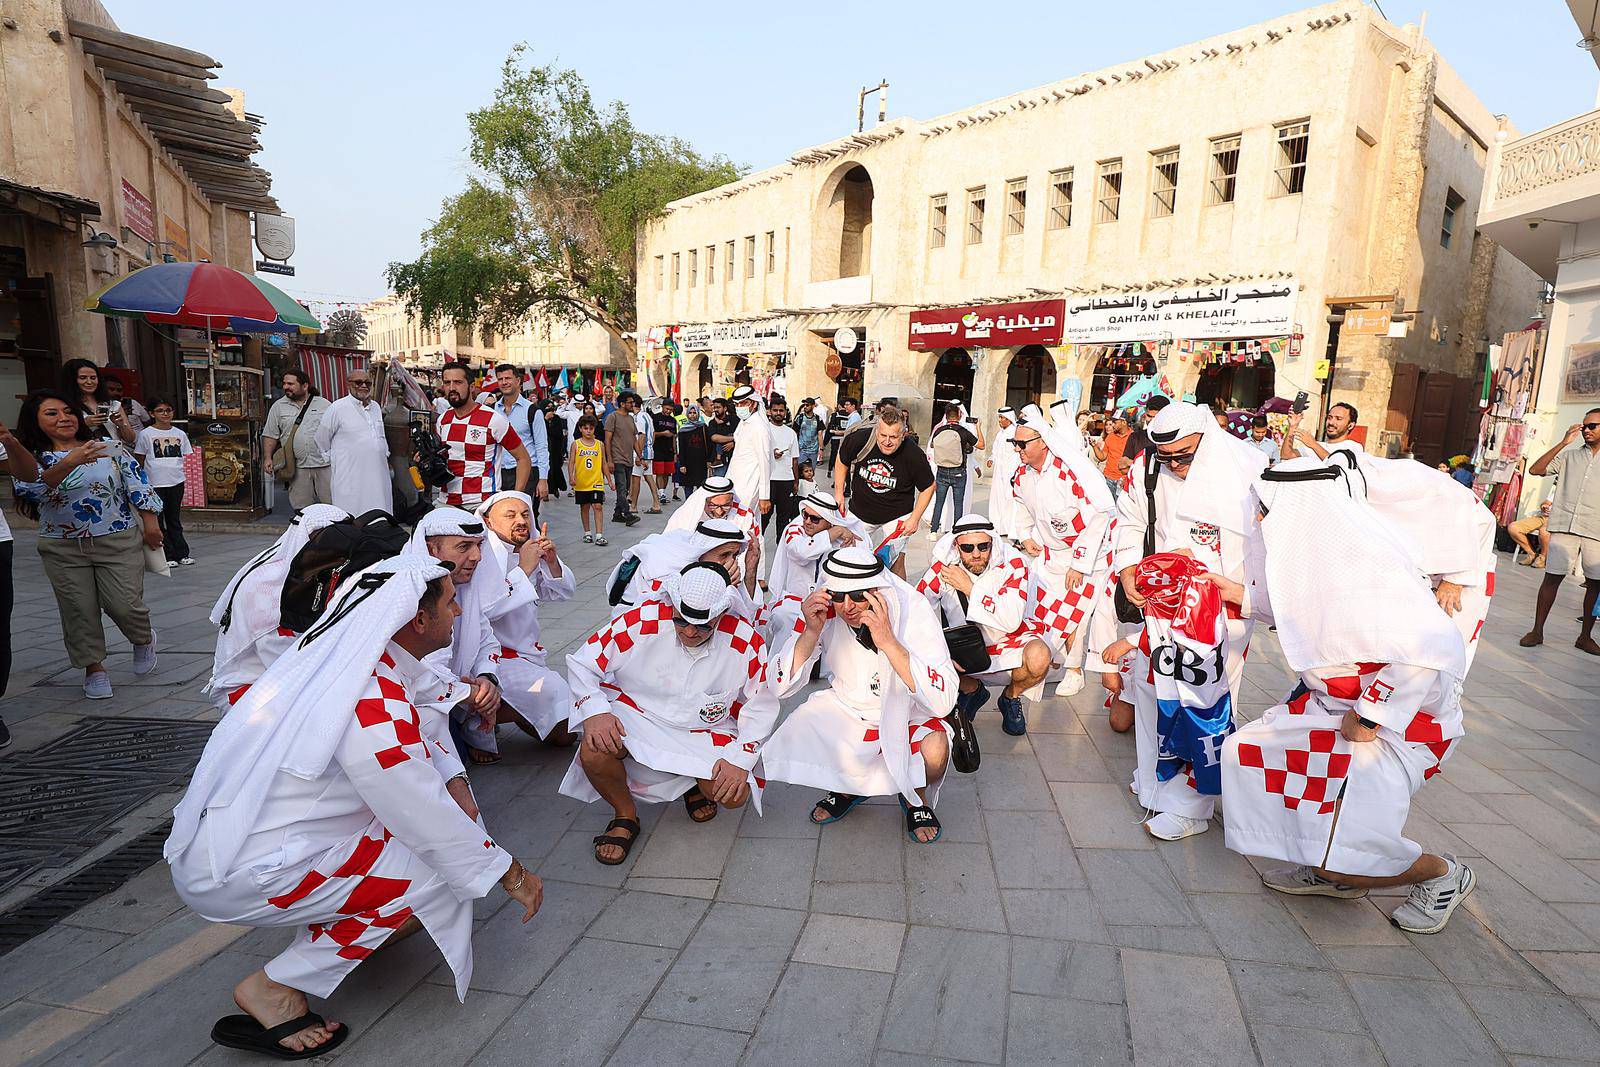 Hrvatski navijači u tradicionalnim katarskim narodnim nošnjama zabavljaju se u centru Dohe 